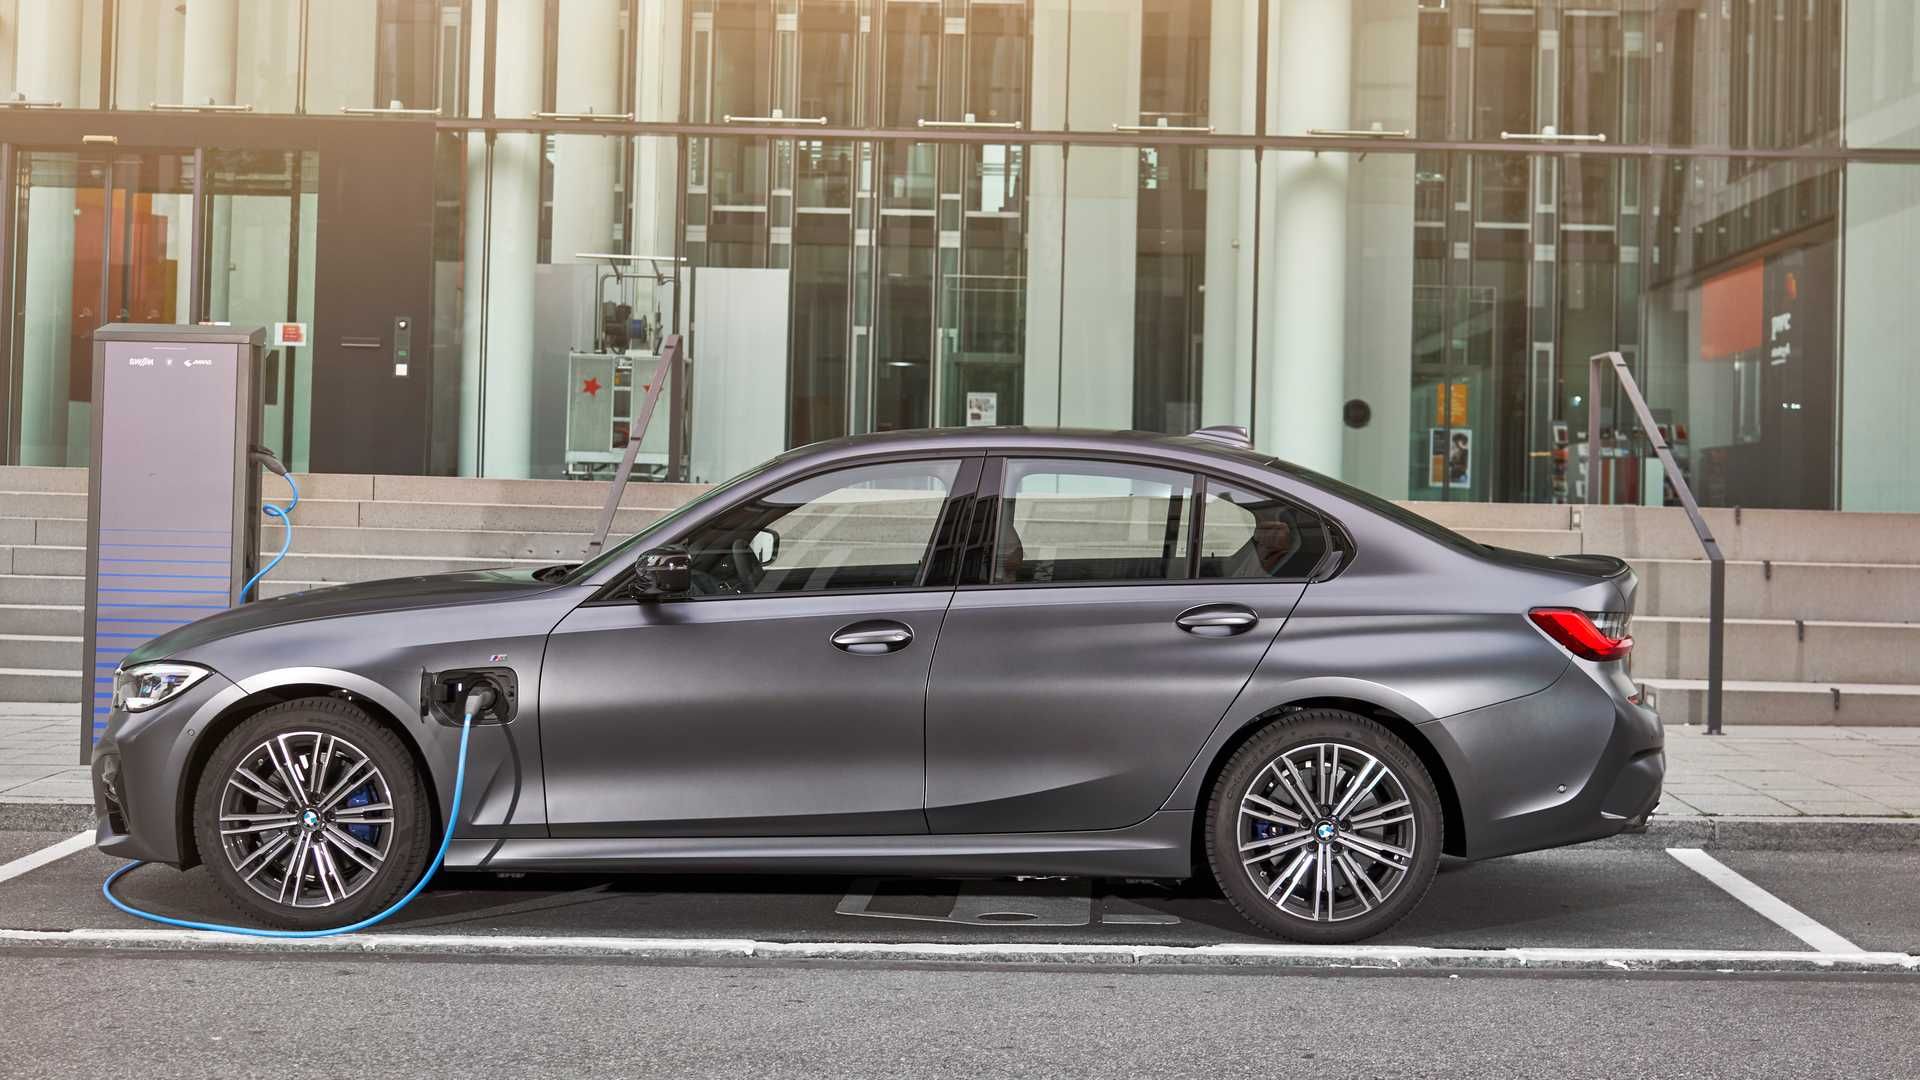 2020 BMW 330e Plug-In Hybrid / بی ام و پلاگین هیبریدی